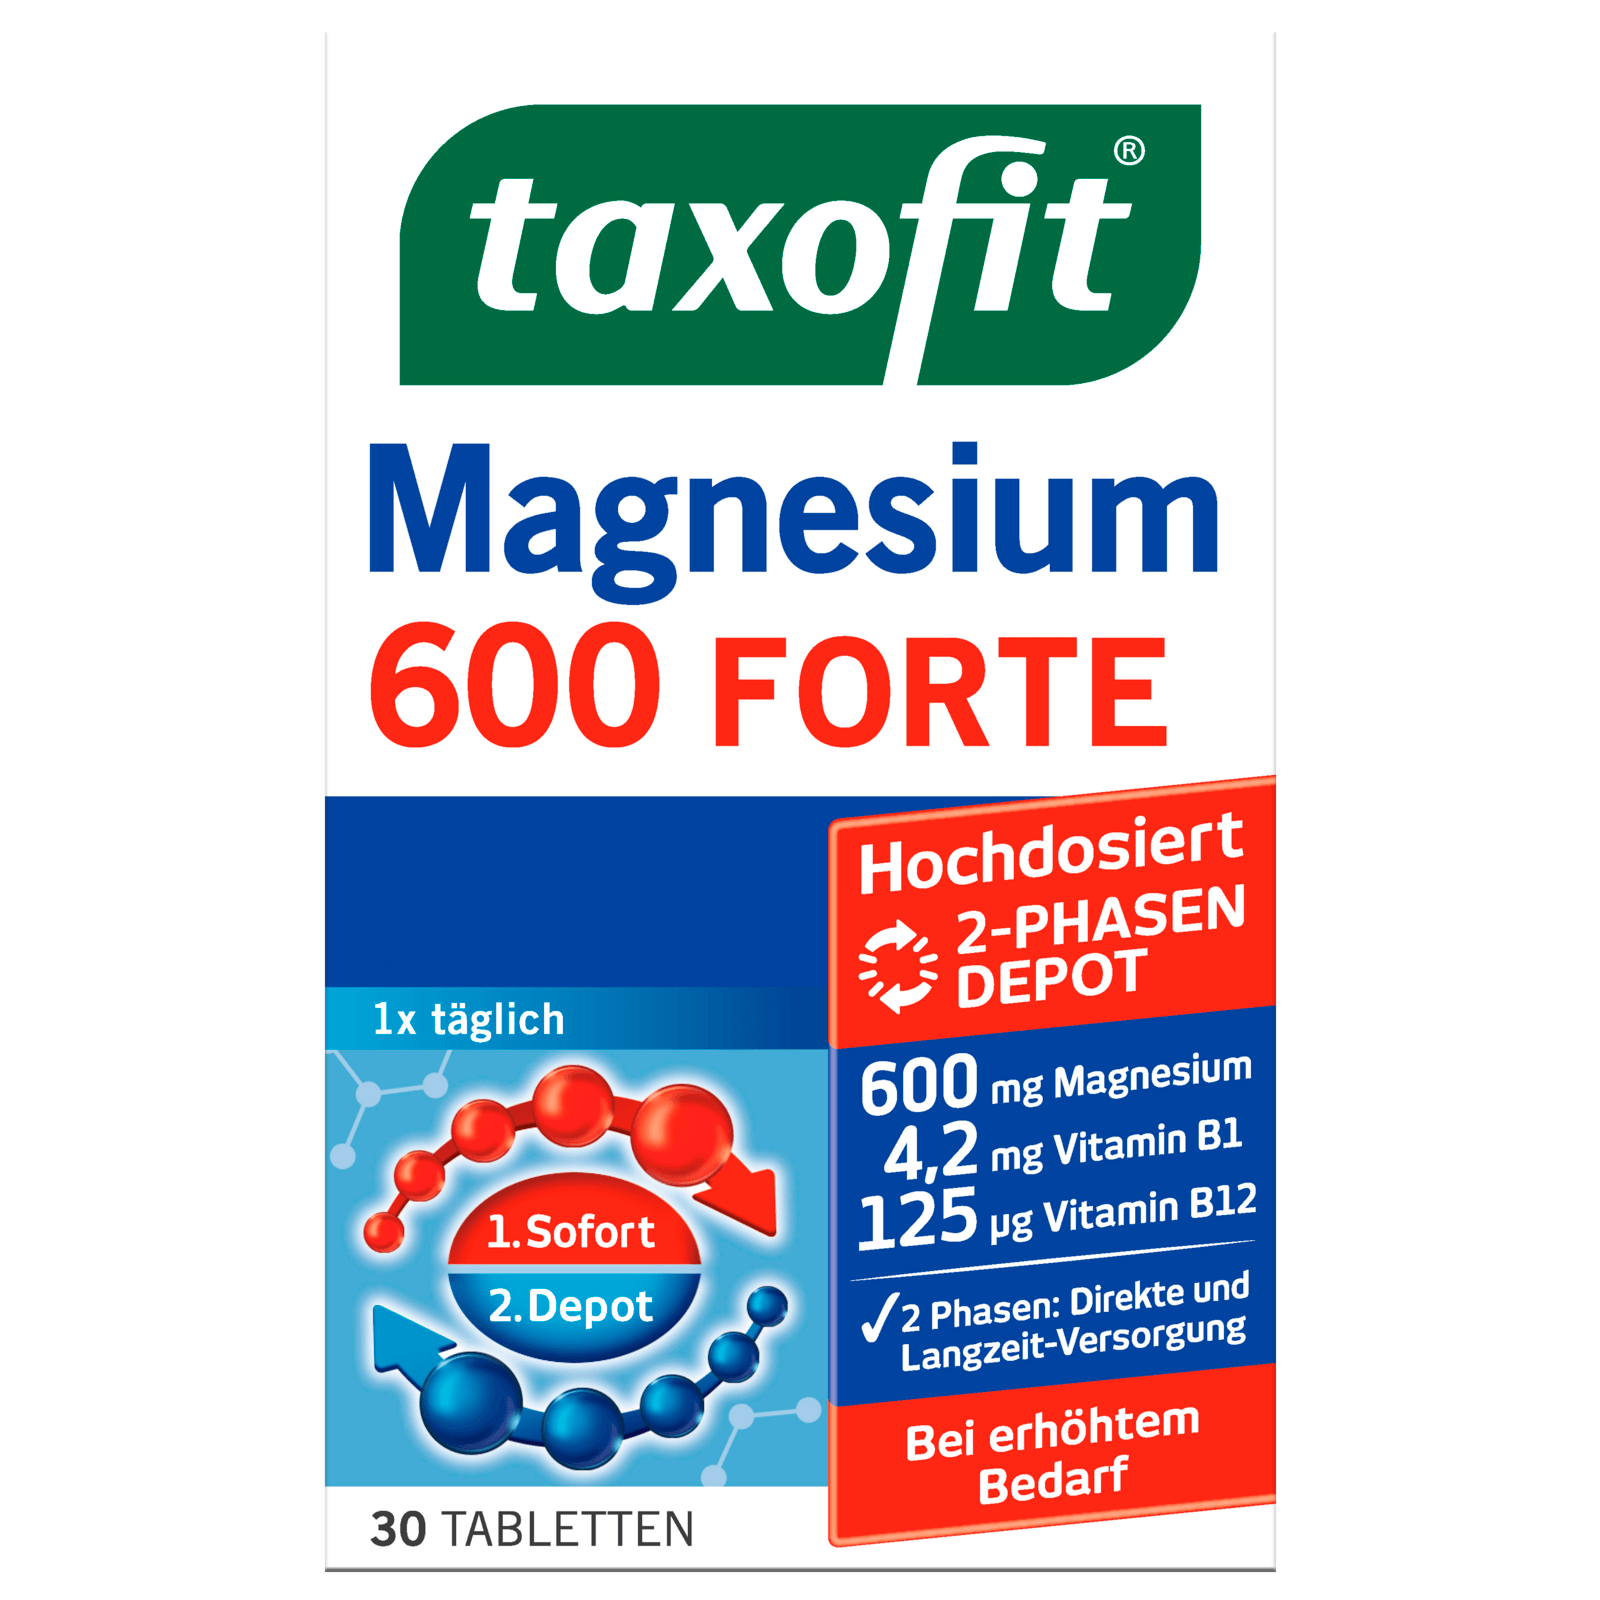 1x 30 Tabletten taxofit Magnesium 600 FORTE 30 Stück 